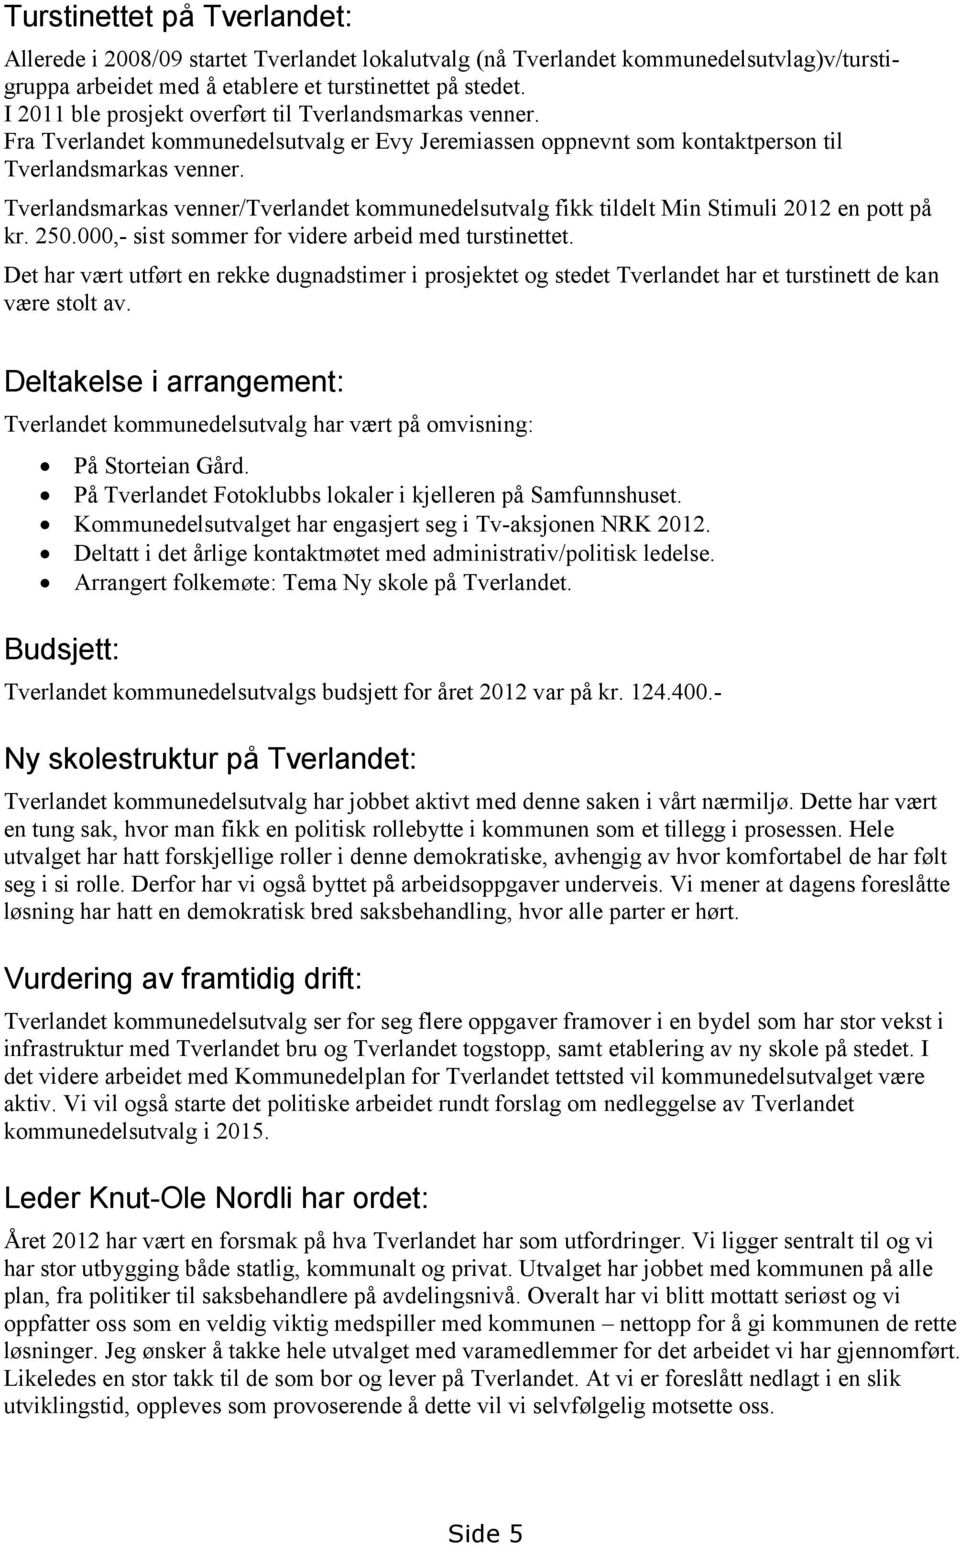 Tverlandsmarkas venner/tverlandet kommunedelsutvalg fikk tildelt Min Stimuli 2012 en pott på kr. 250.000,- sist sommer for videre arbeid med turstinettet.